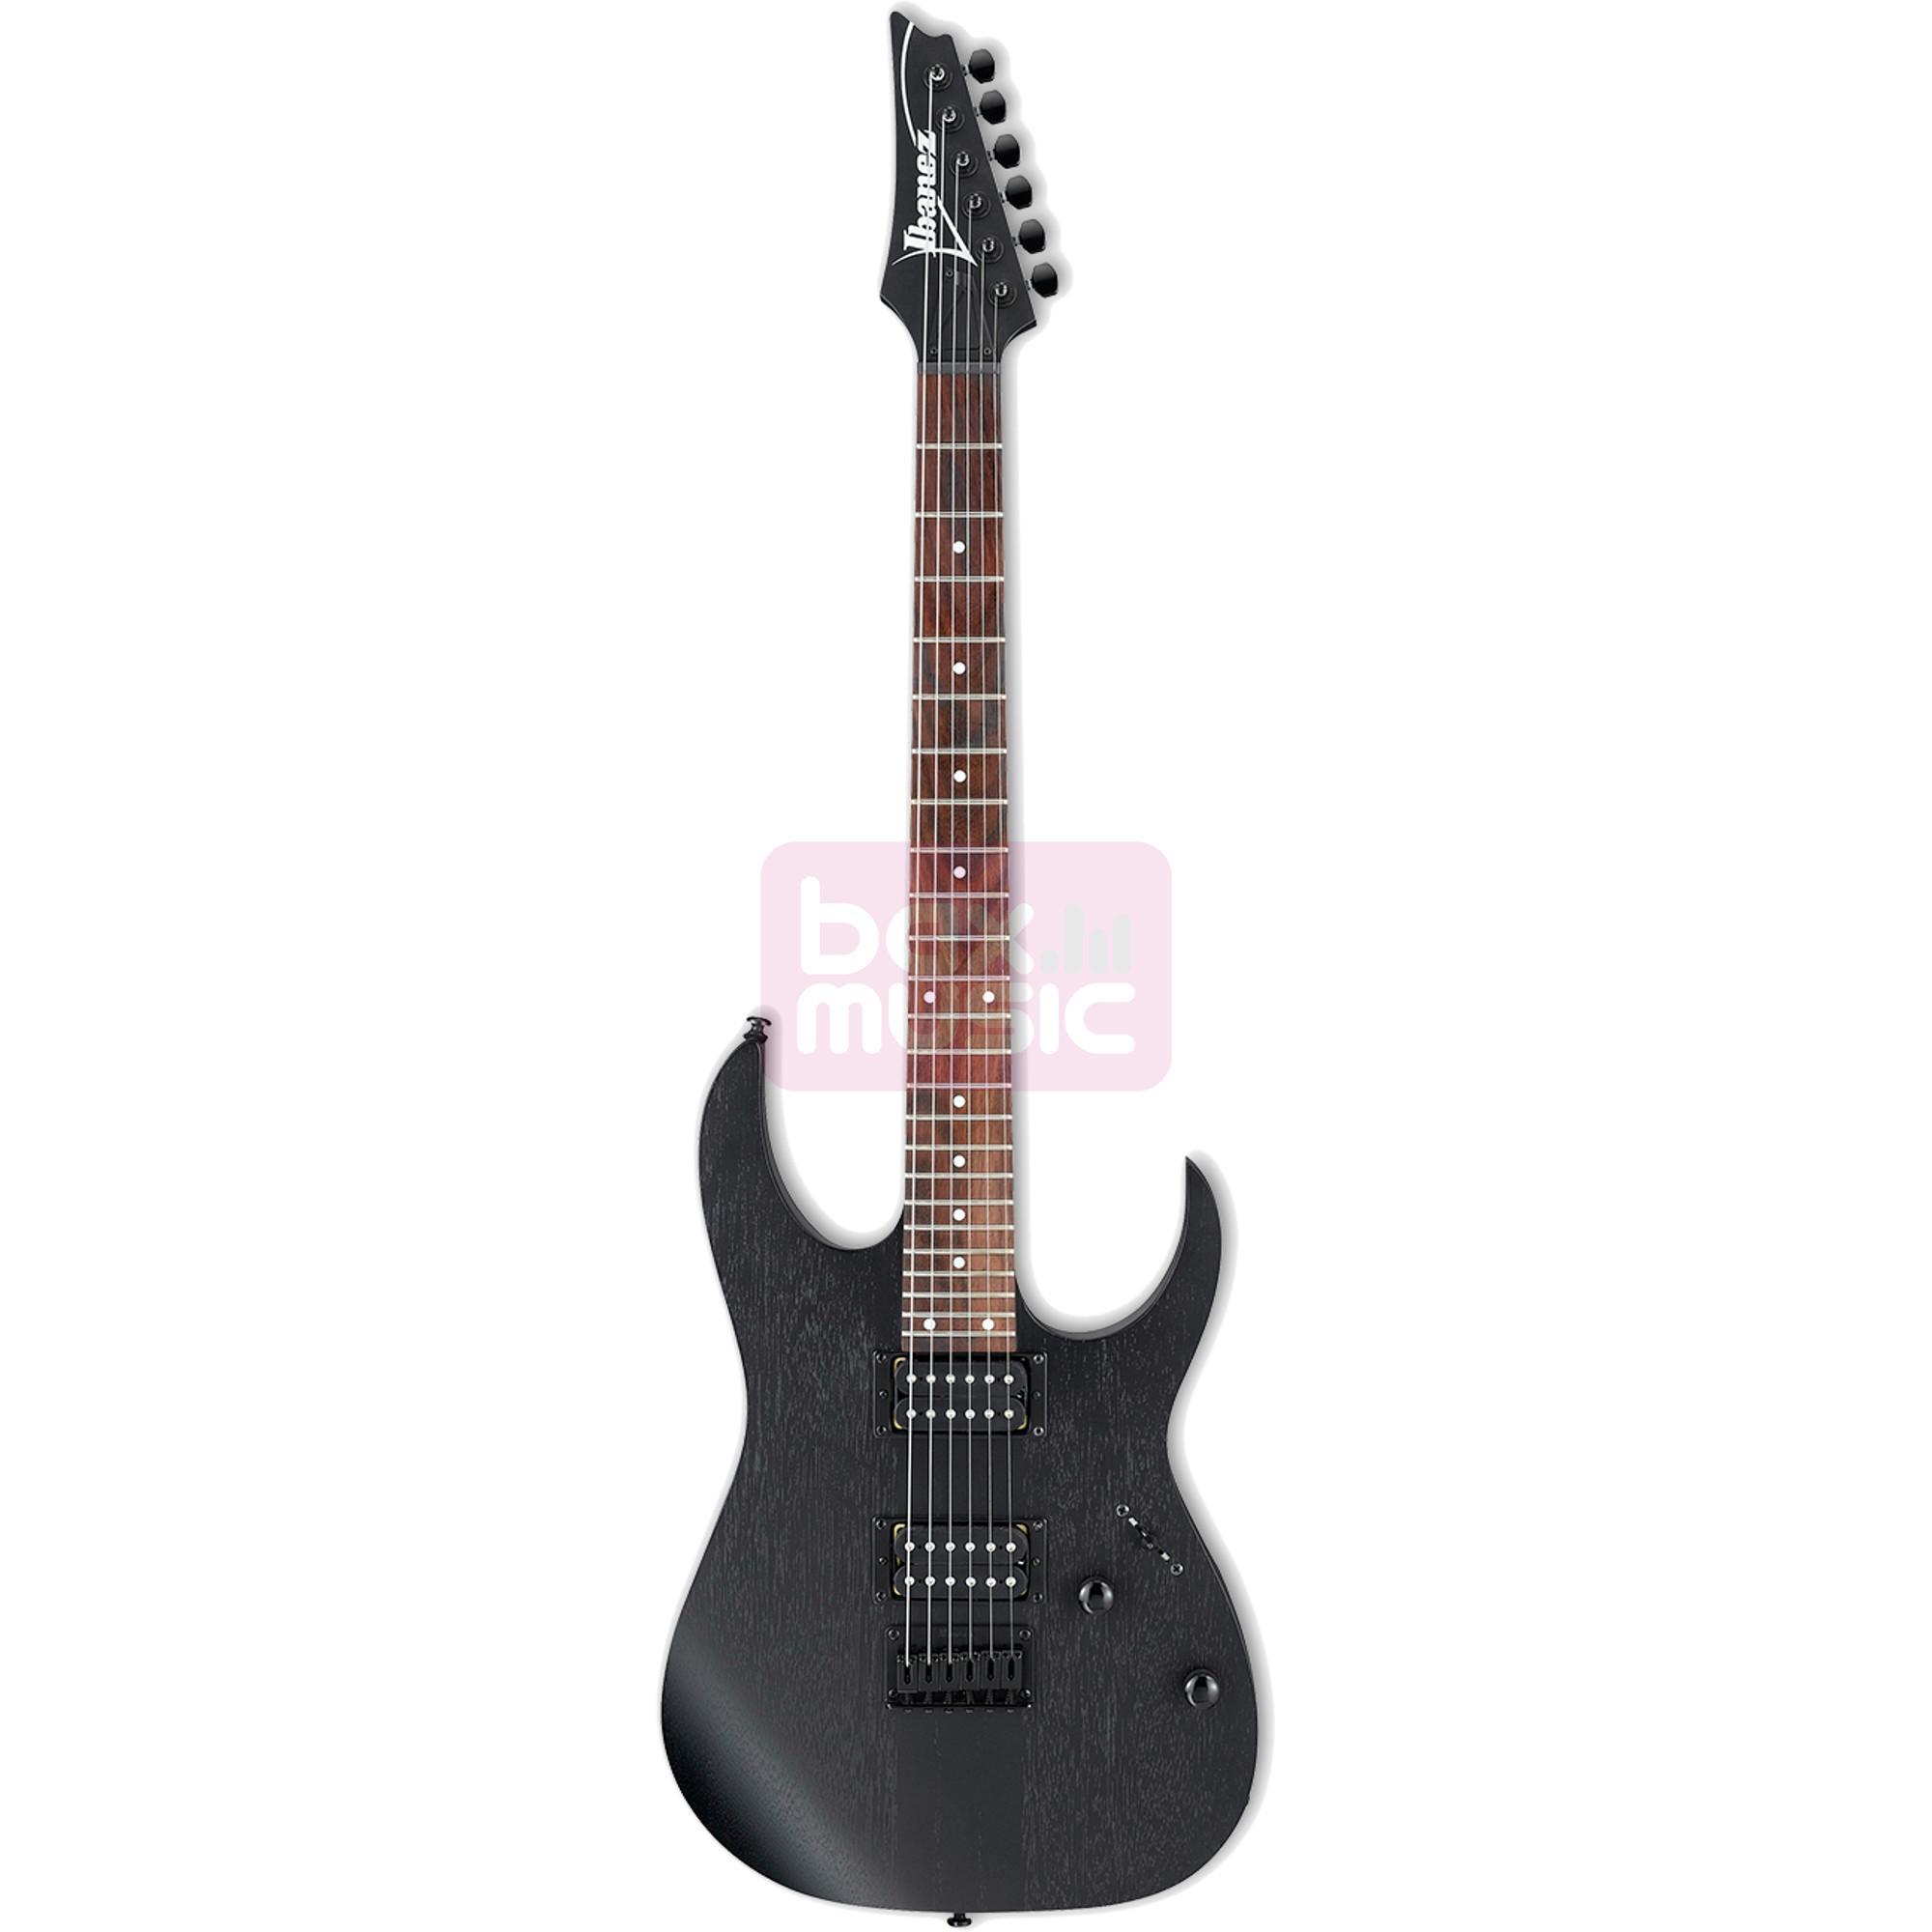 Ibanez RGRT 421 Weathered Black elektrische gitaar